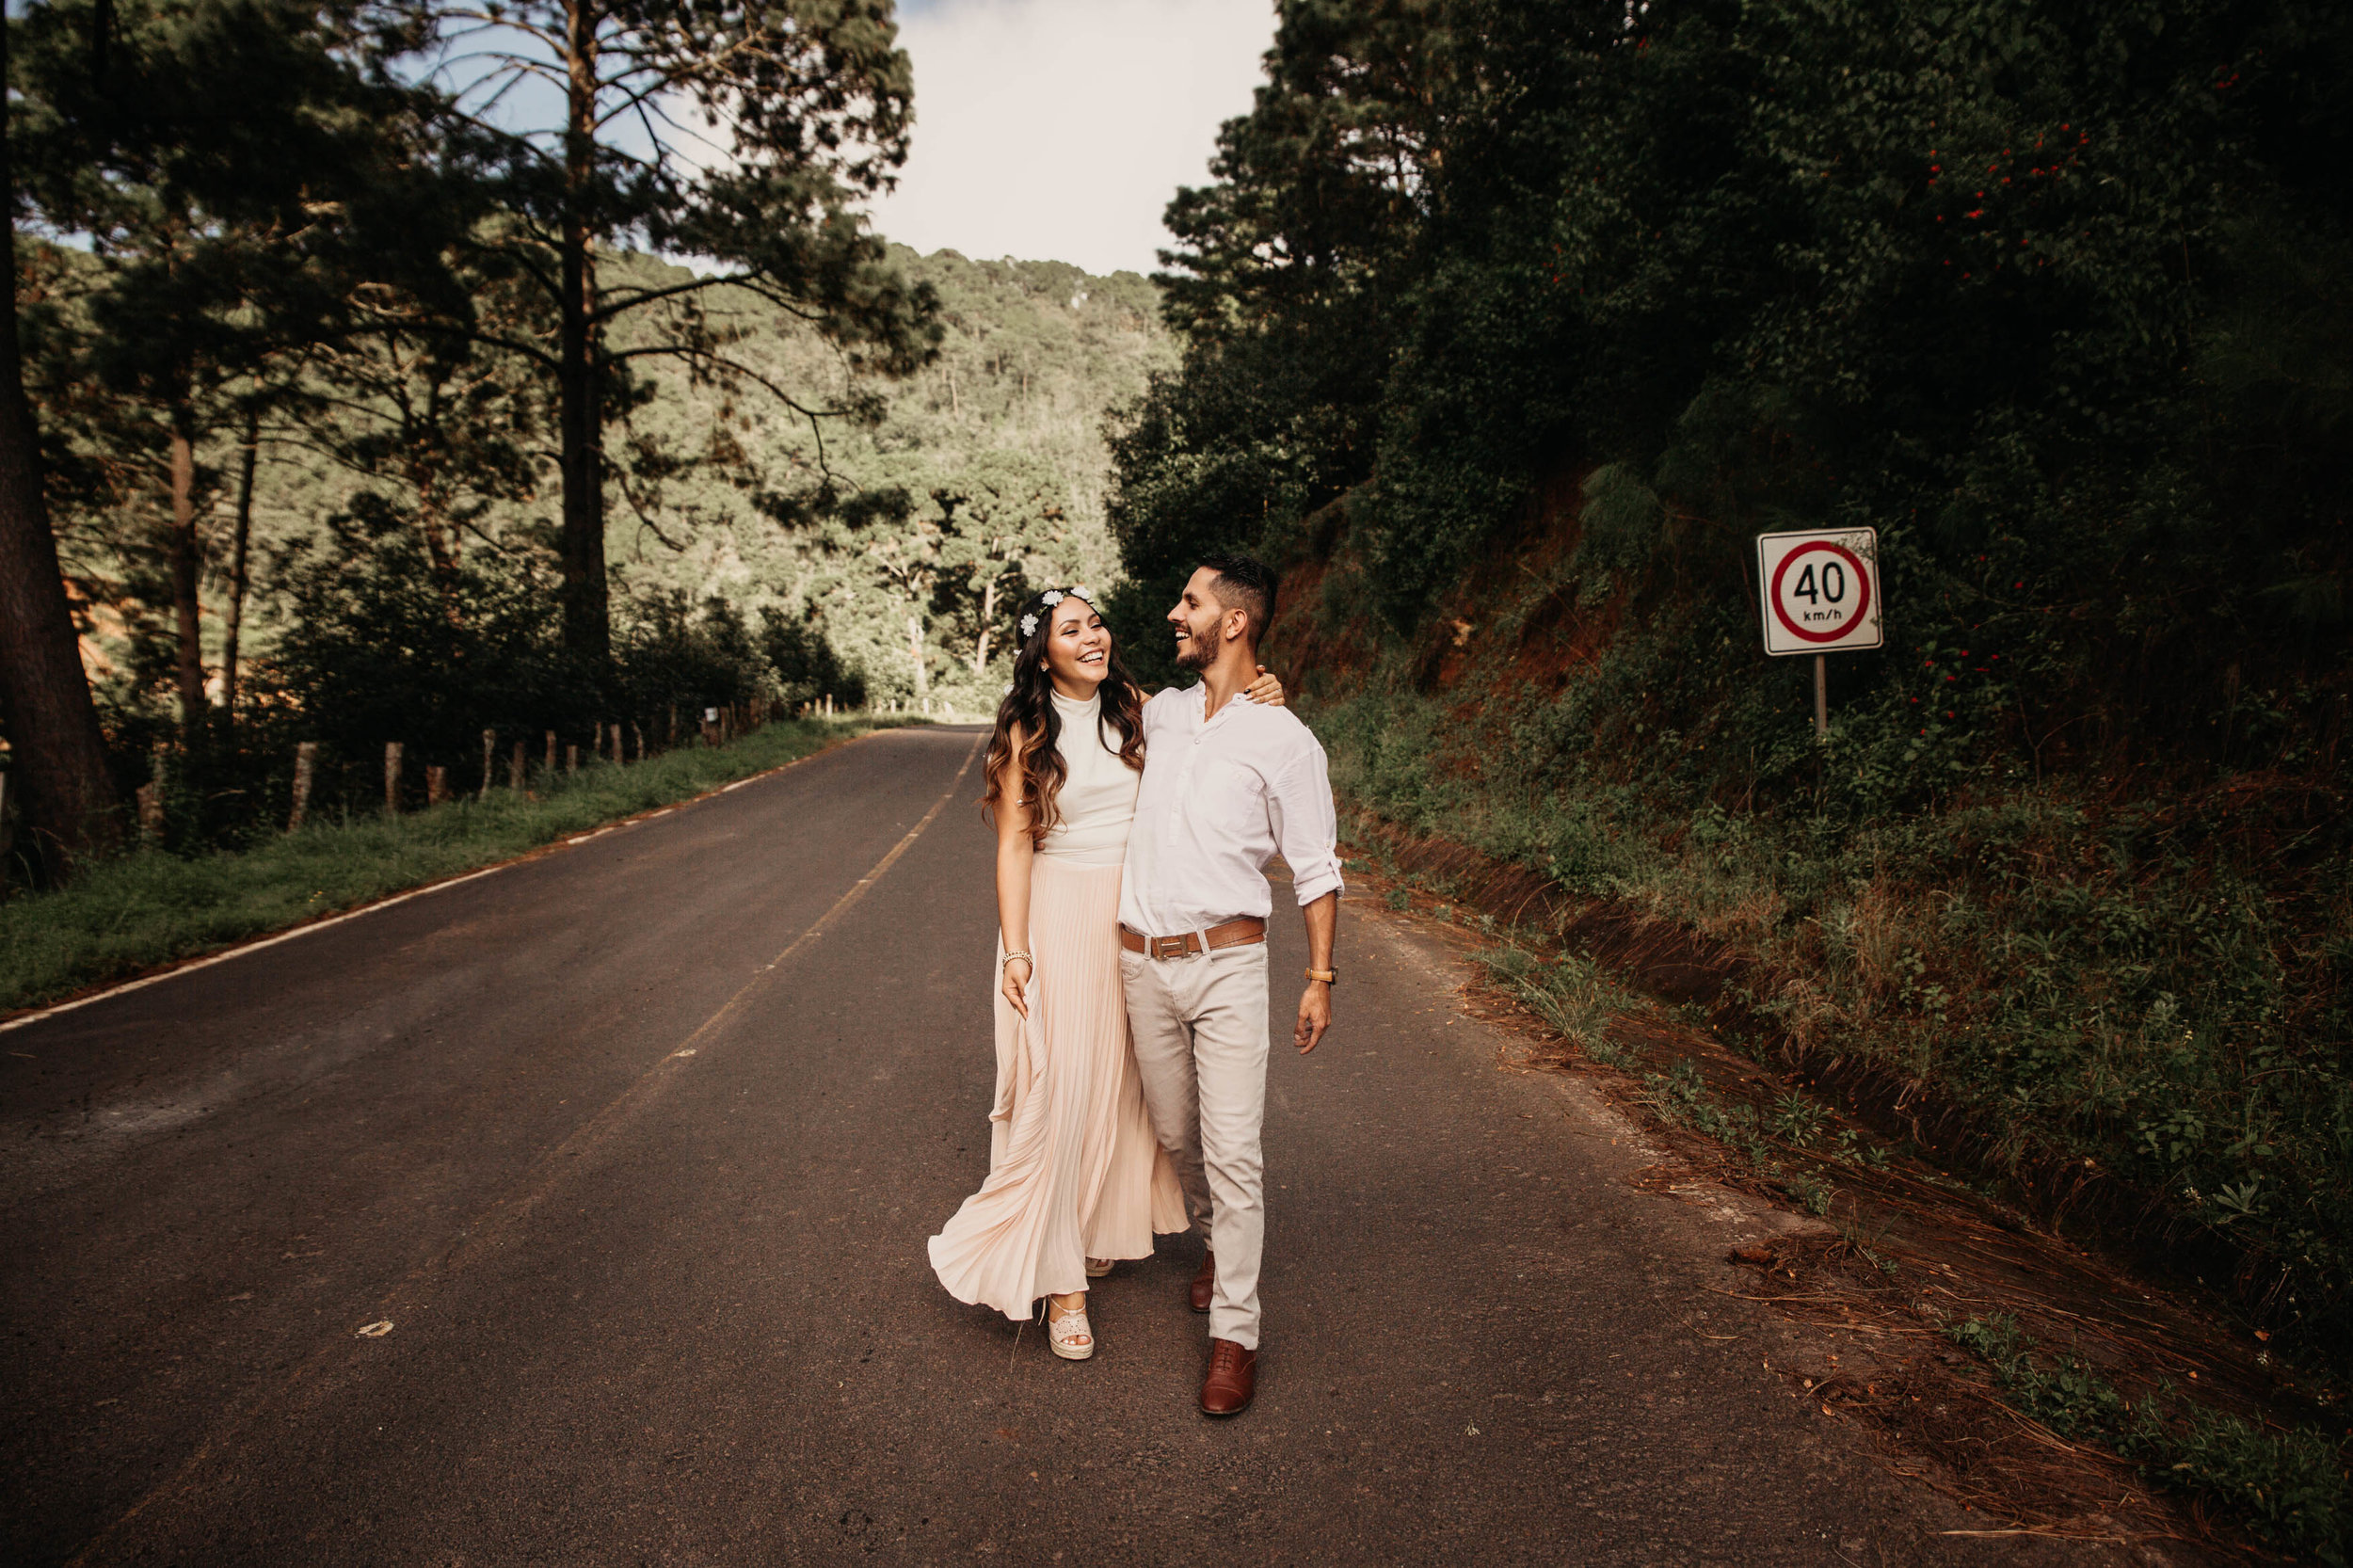 Fotografo-de-bodas-destino-Mexico-wedding-destination-photographer-san-miguel-de-allende-guanajuato-queretaro-boho-bohemian-bohemio-chic-editorial-carotida-photographer-naturaleza